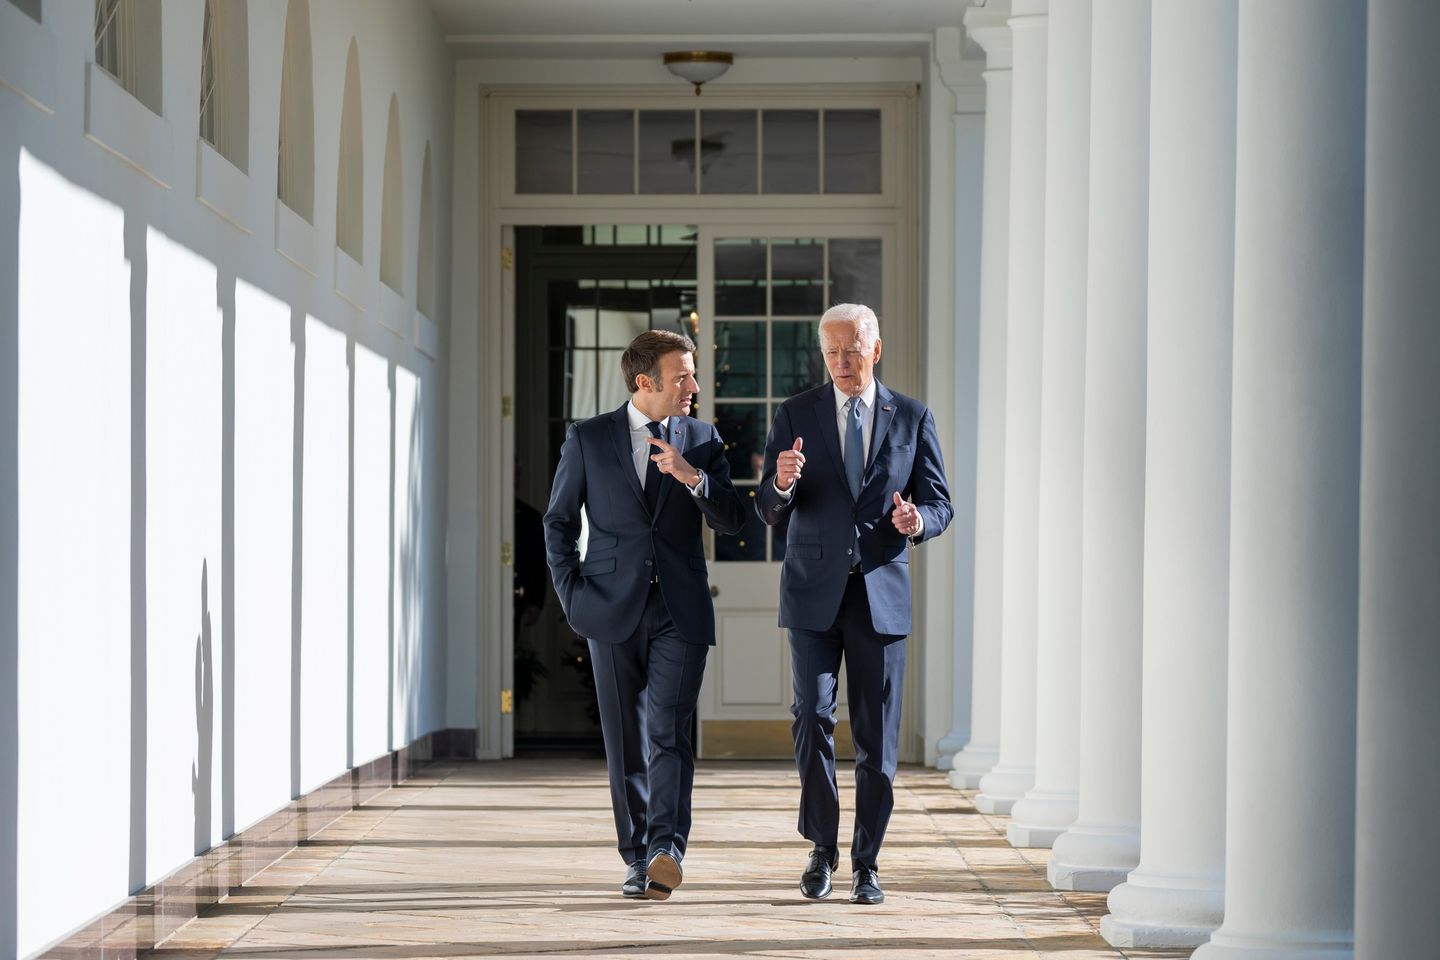 Macron and Biden walking while talking